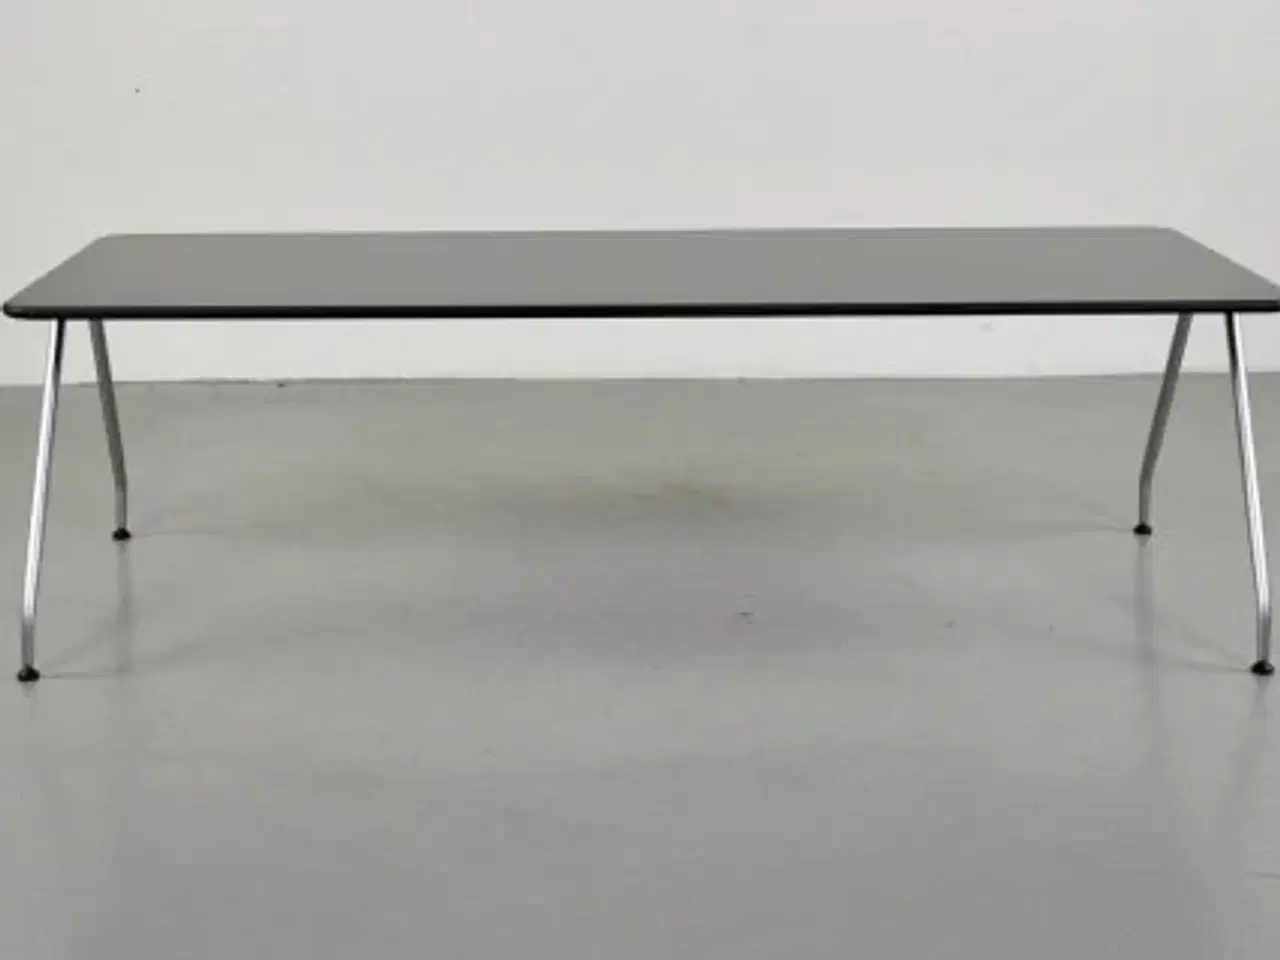 Billede 1 - Bent krogh sofabord i sort med alufarvede ben.